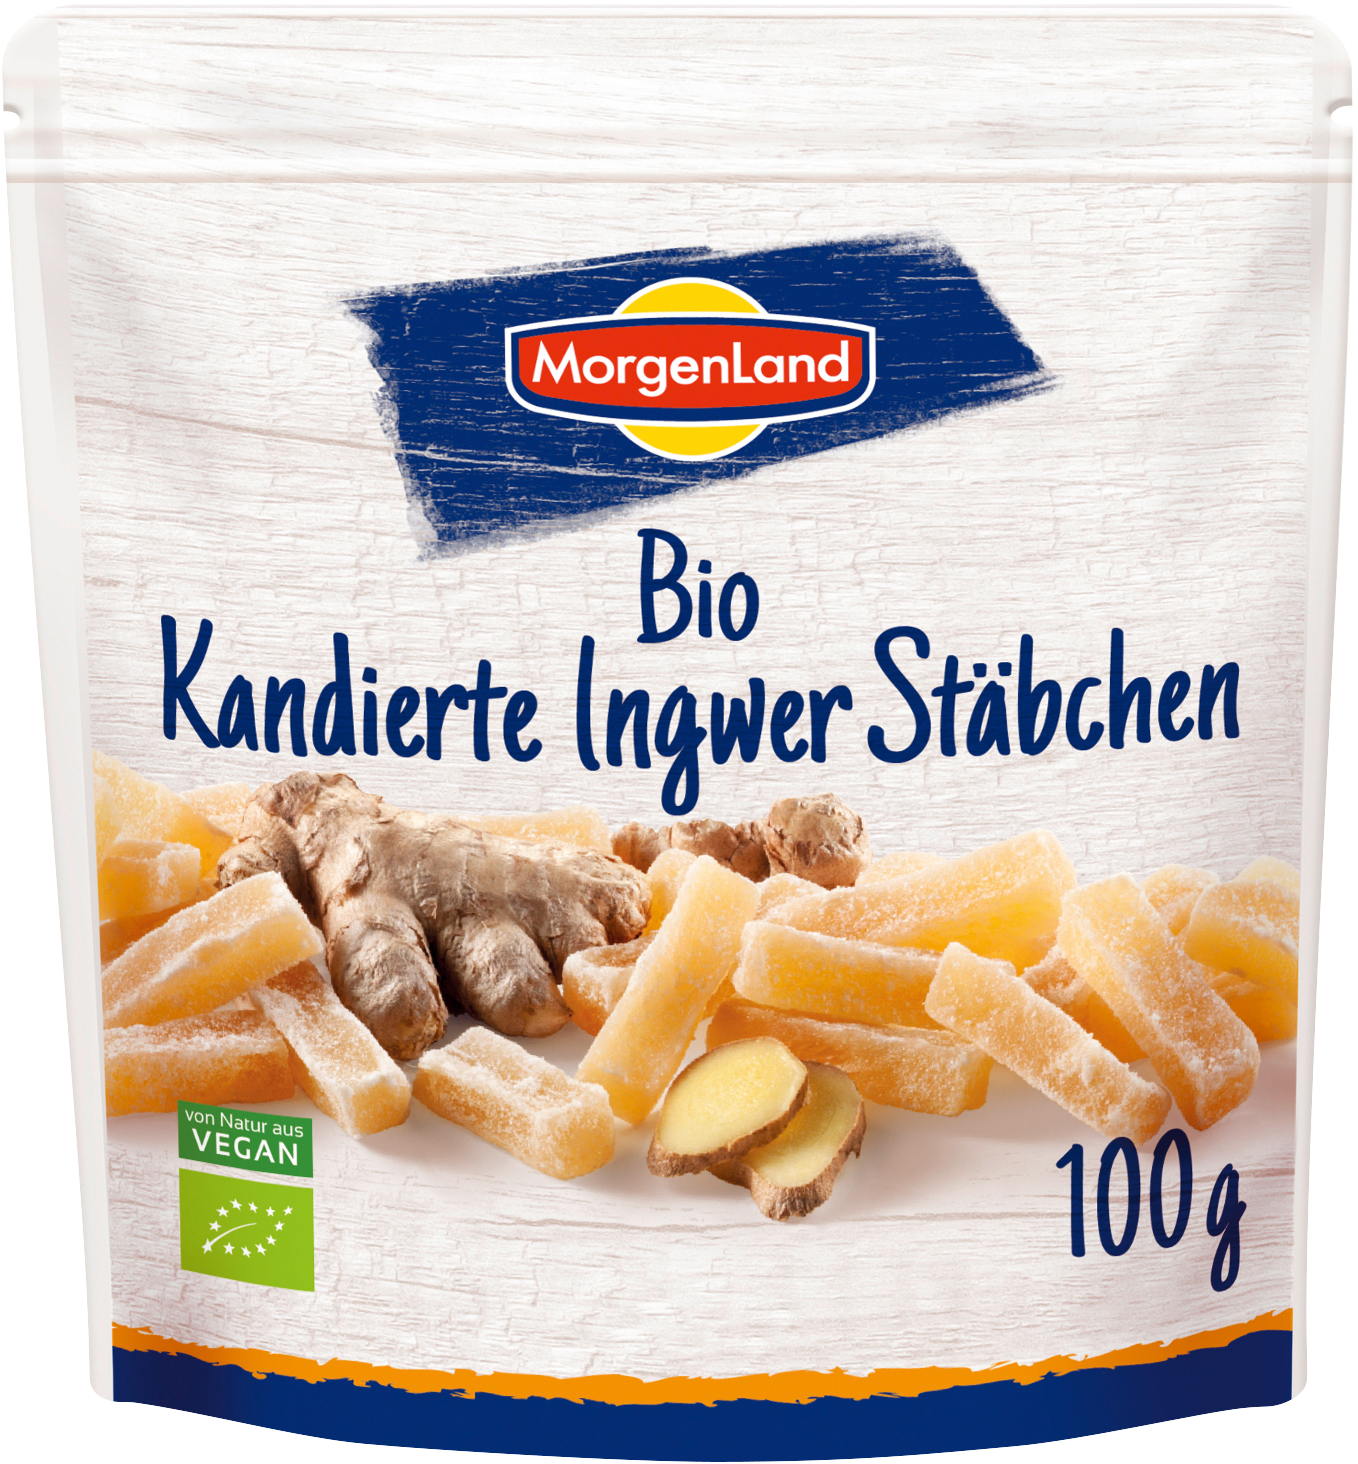 MorgenLand Kandierte Ingwer Stäbchen 100g/nl